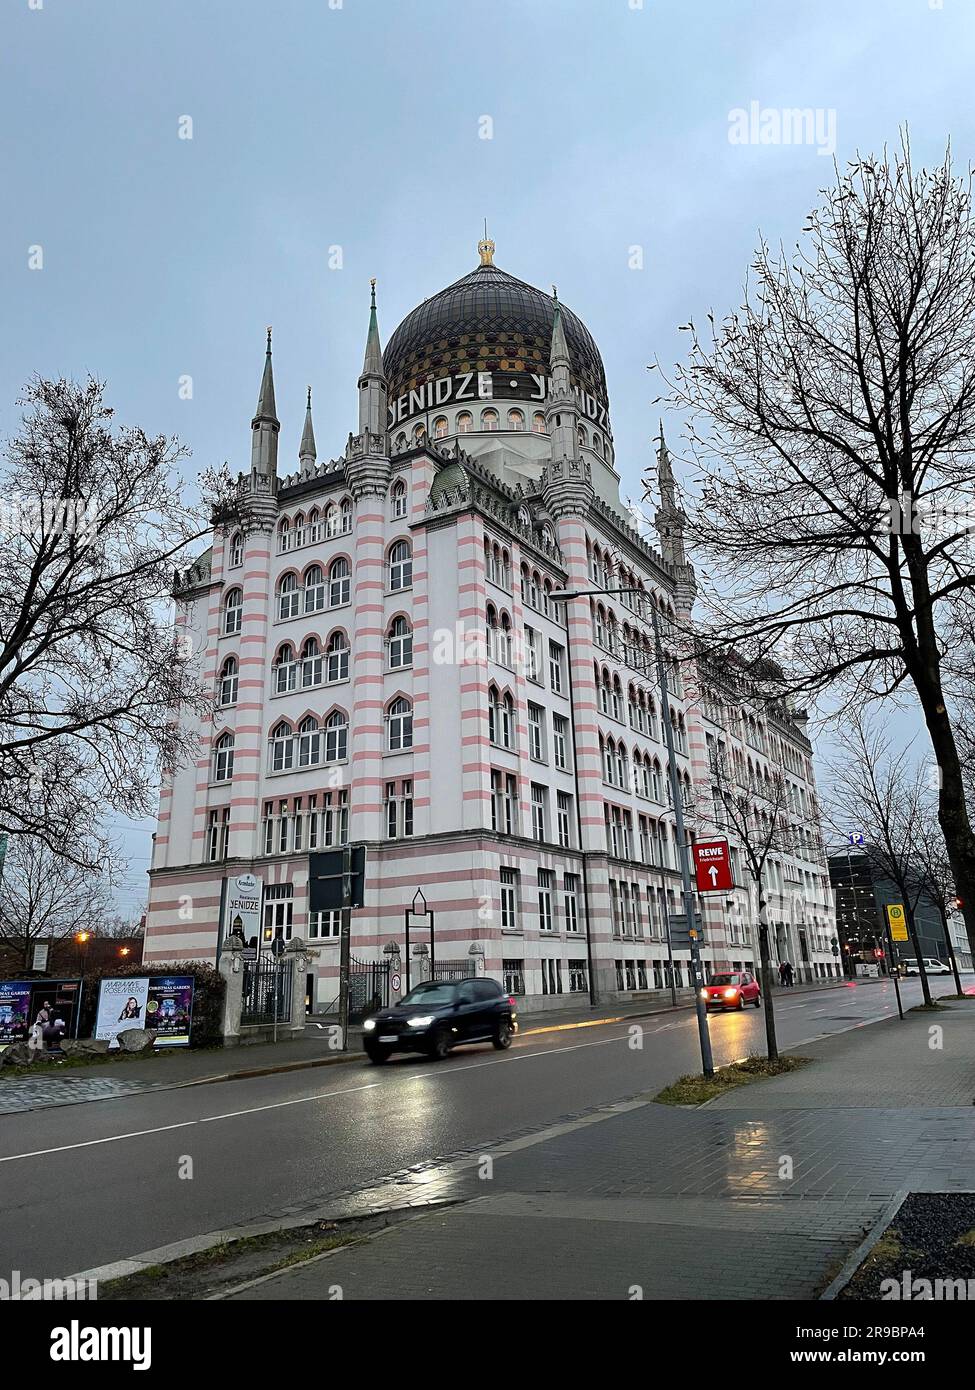 Dresden, Deutschland - 19. DEZEMBER 2021: Yenidze ist ein ehemaliges Zigarettenfabrikgebäude in Dresden, erbaut 1907-1909. Heute wird es als Bürogebäude Nr. genutzt Stockfoto